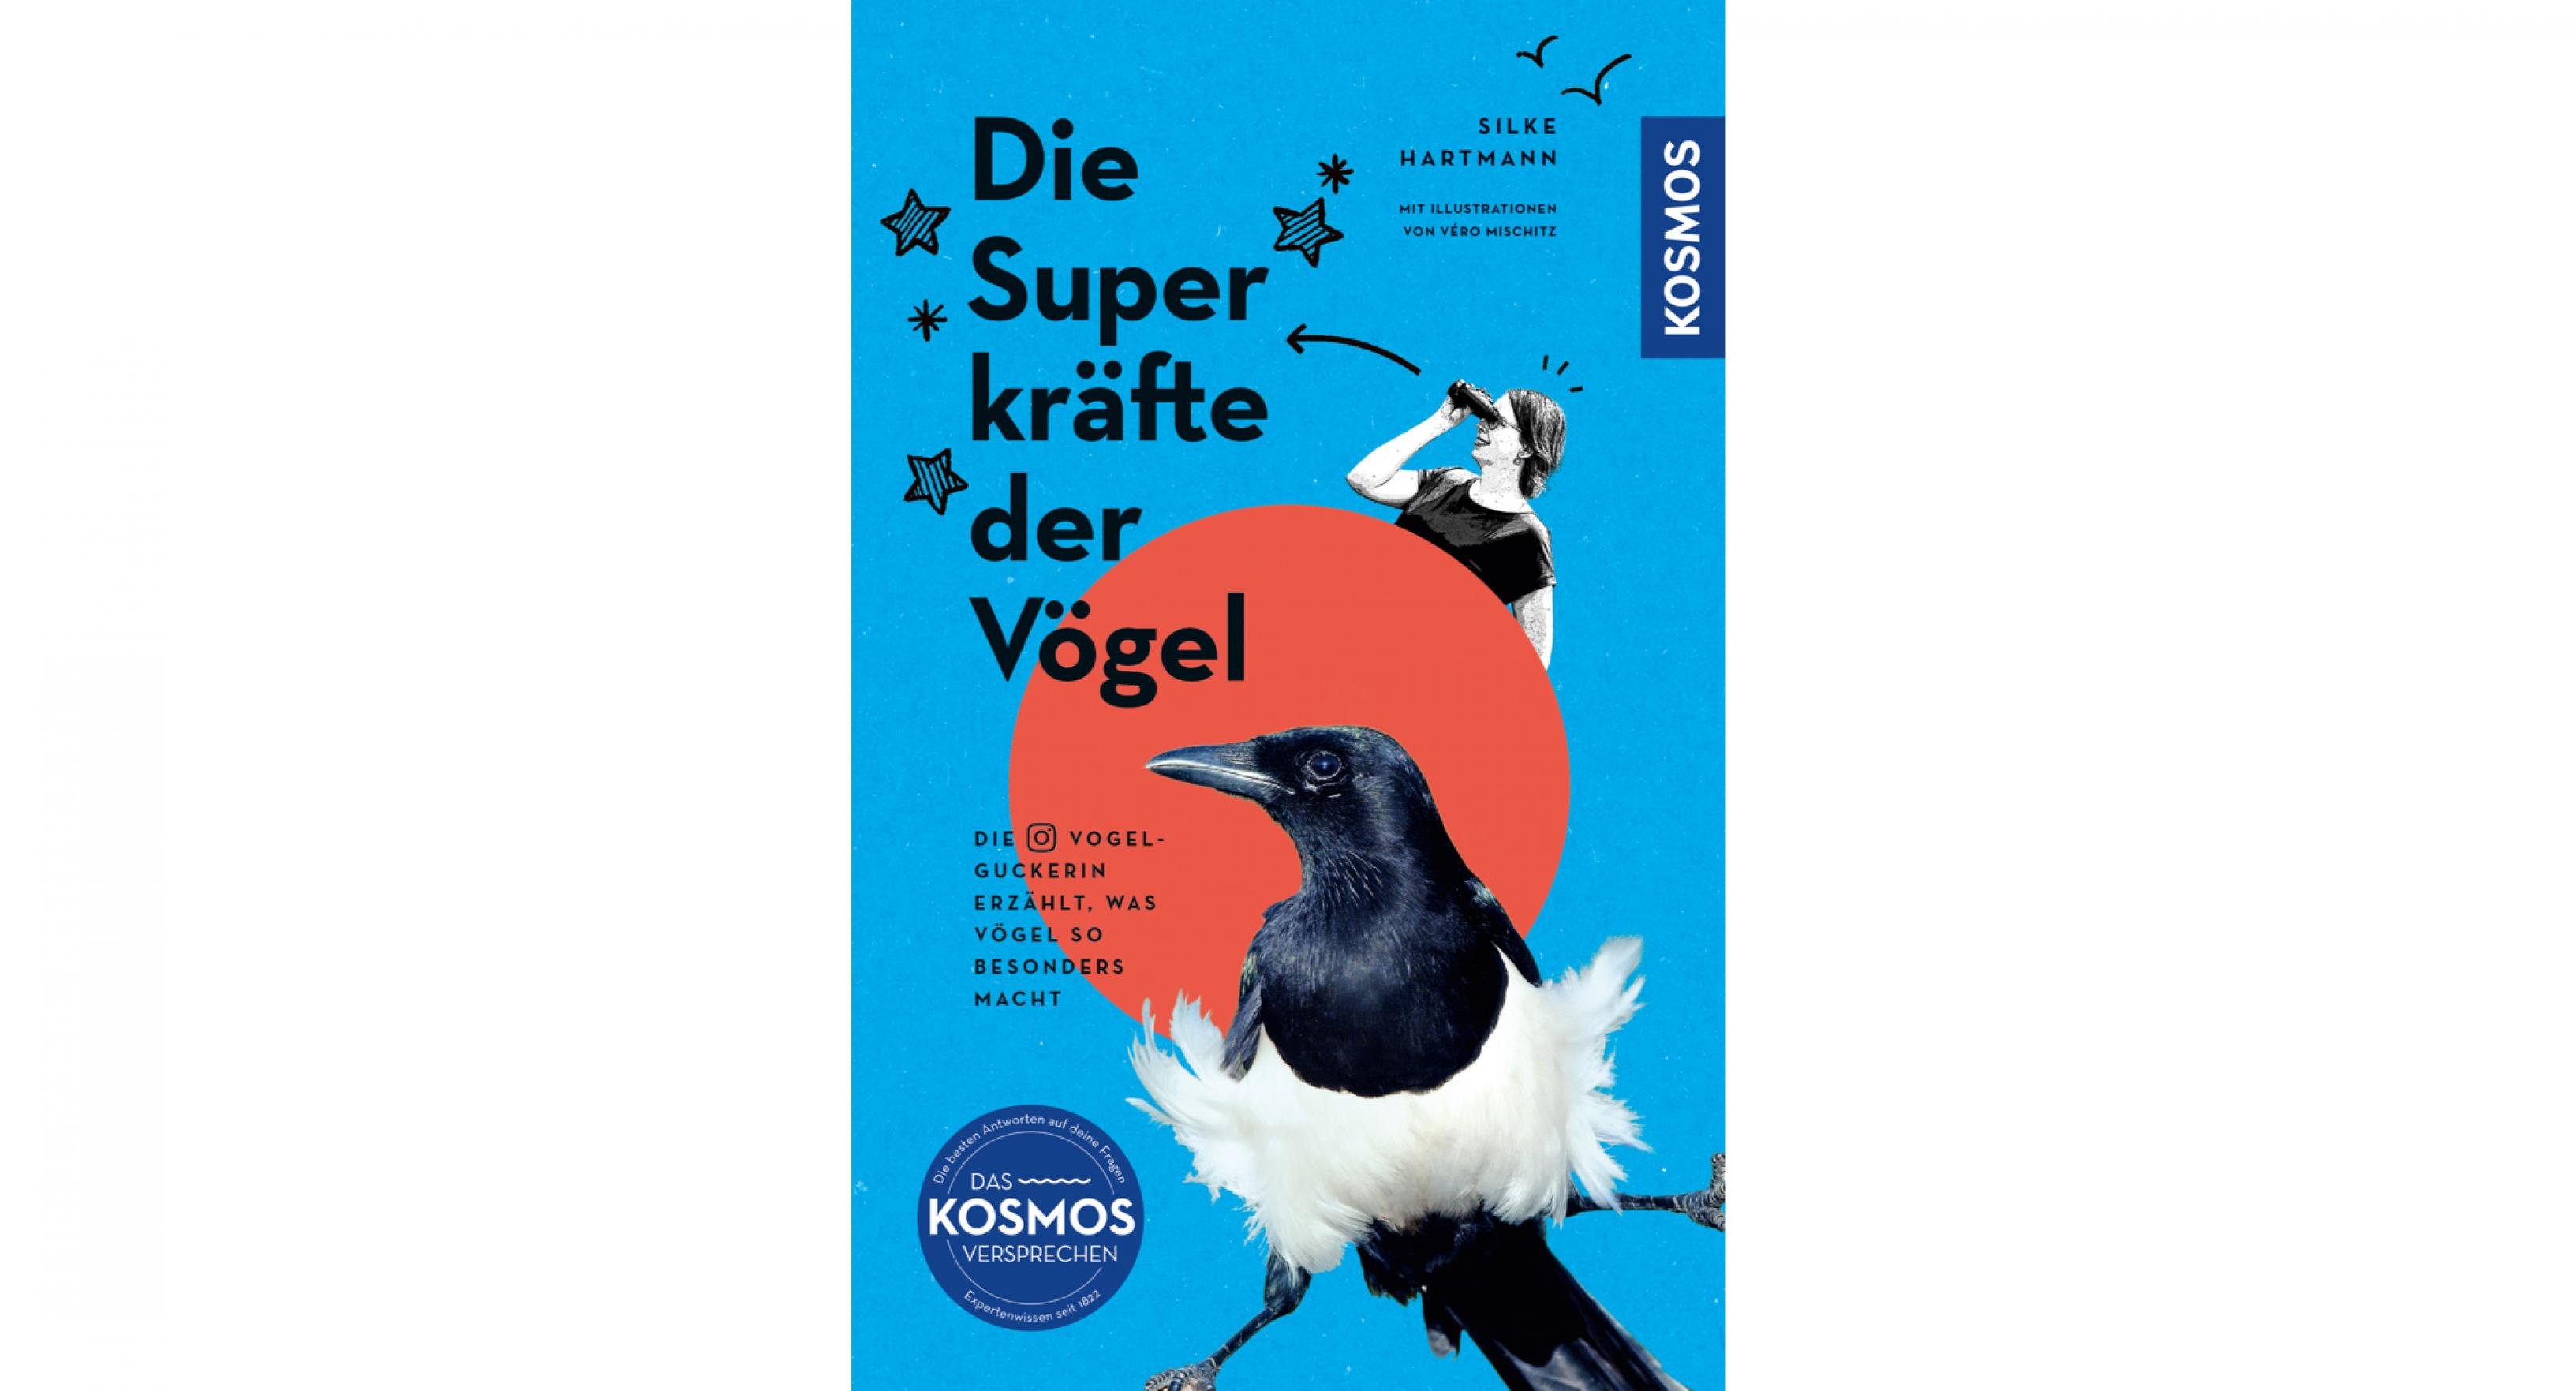 Das Cover des Kosmos-Buchs „Die Superkräfte der Vögel“ zeigt eine Elster in einem rotem Kreis auf blauem Grund.